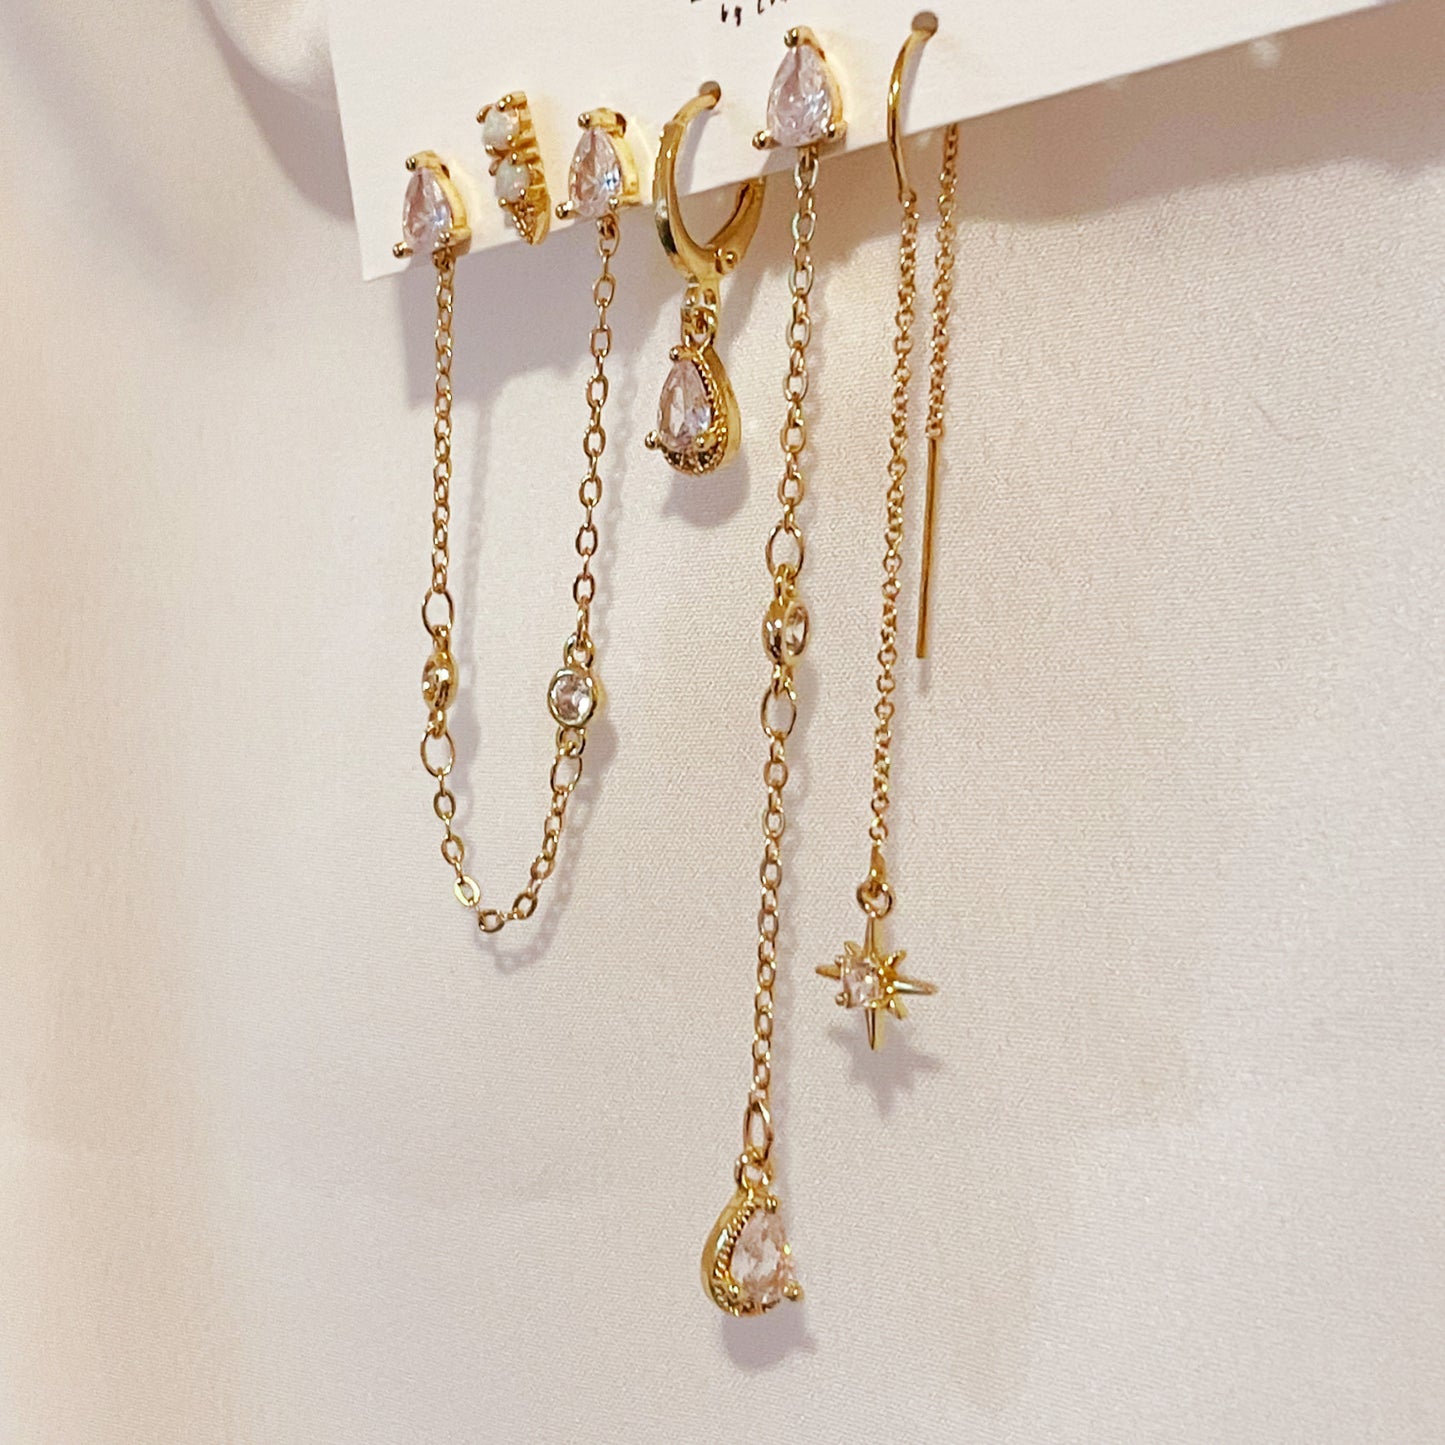 Starshine Threader Earrings Gold Filled Delicate Dangle